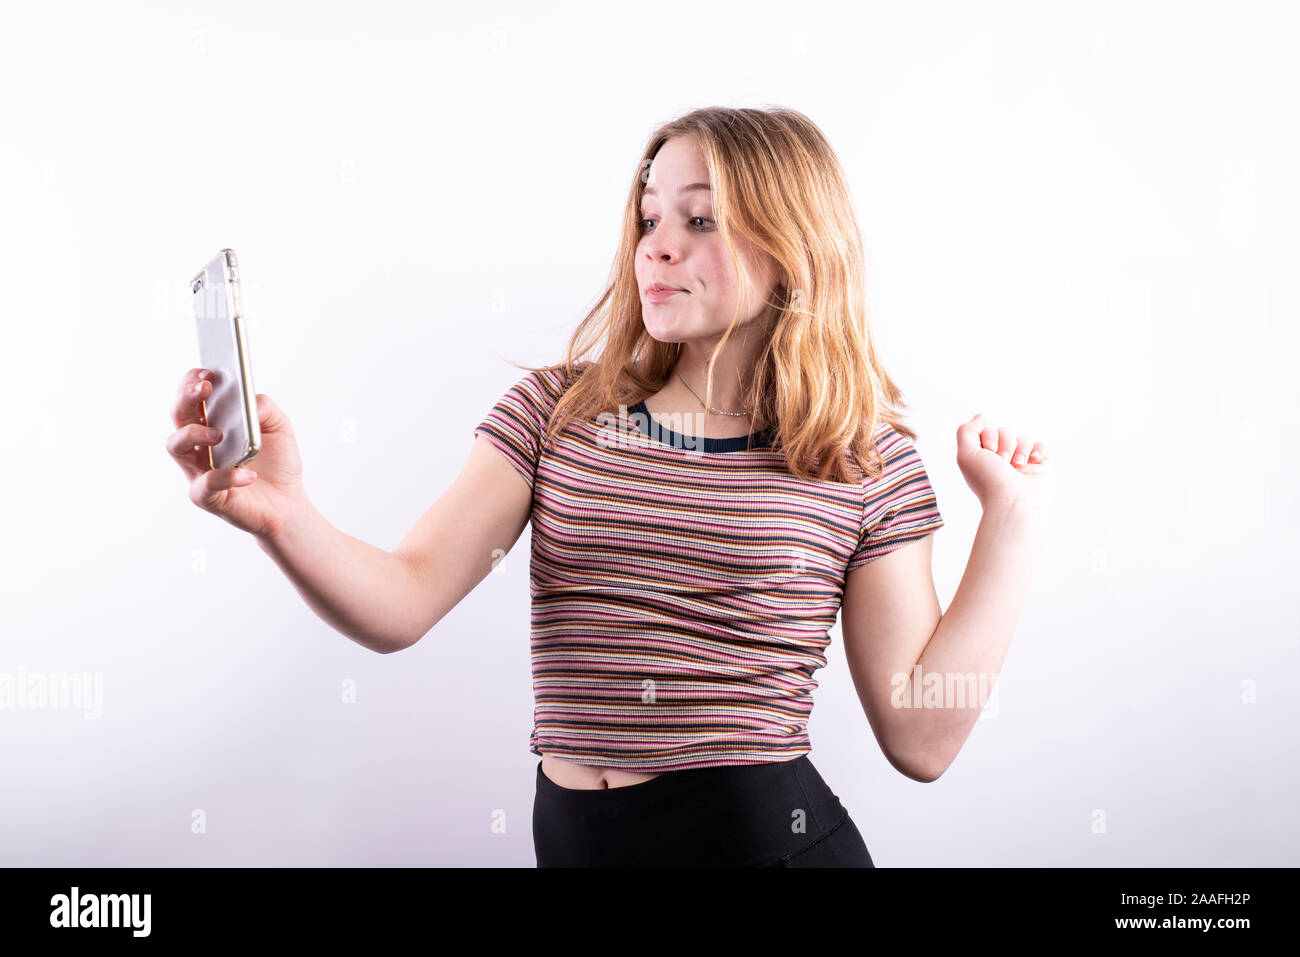 Caucasian ragazza adolescente che indossa un colorato a strisce orizzontali T-shirt con un espressione divertente e pursed lips tenendo un selfie con uno smartphone Foto Stock